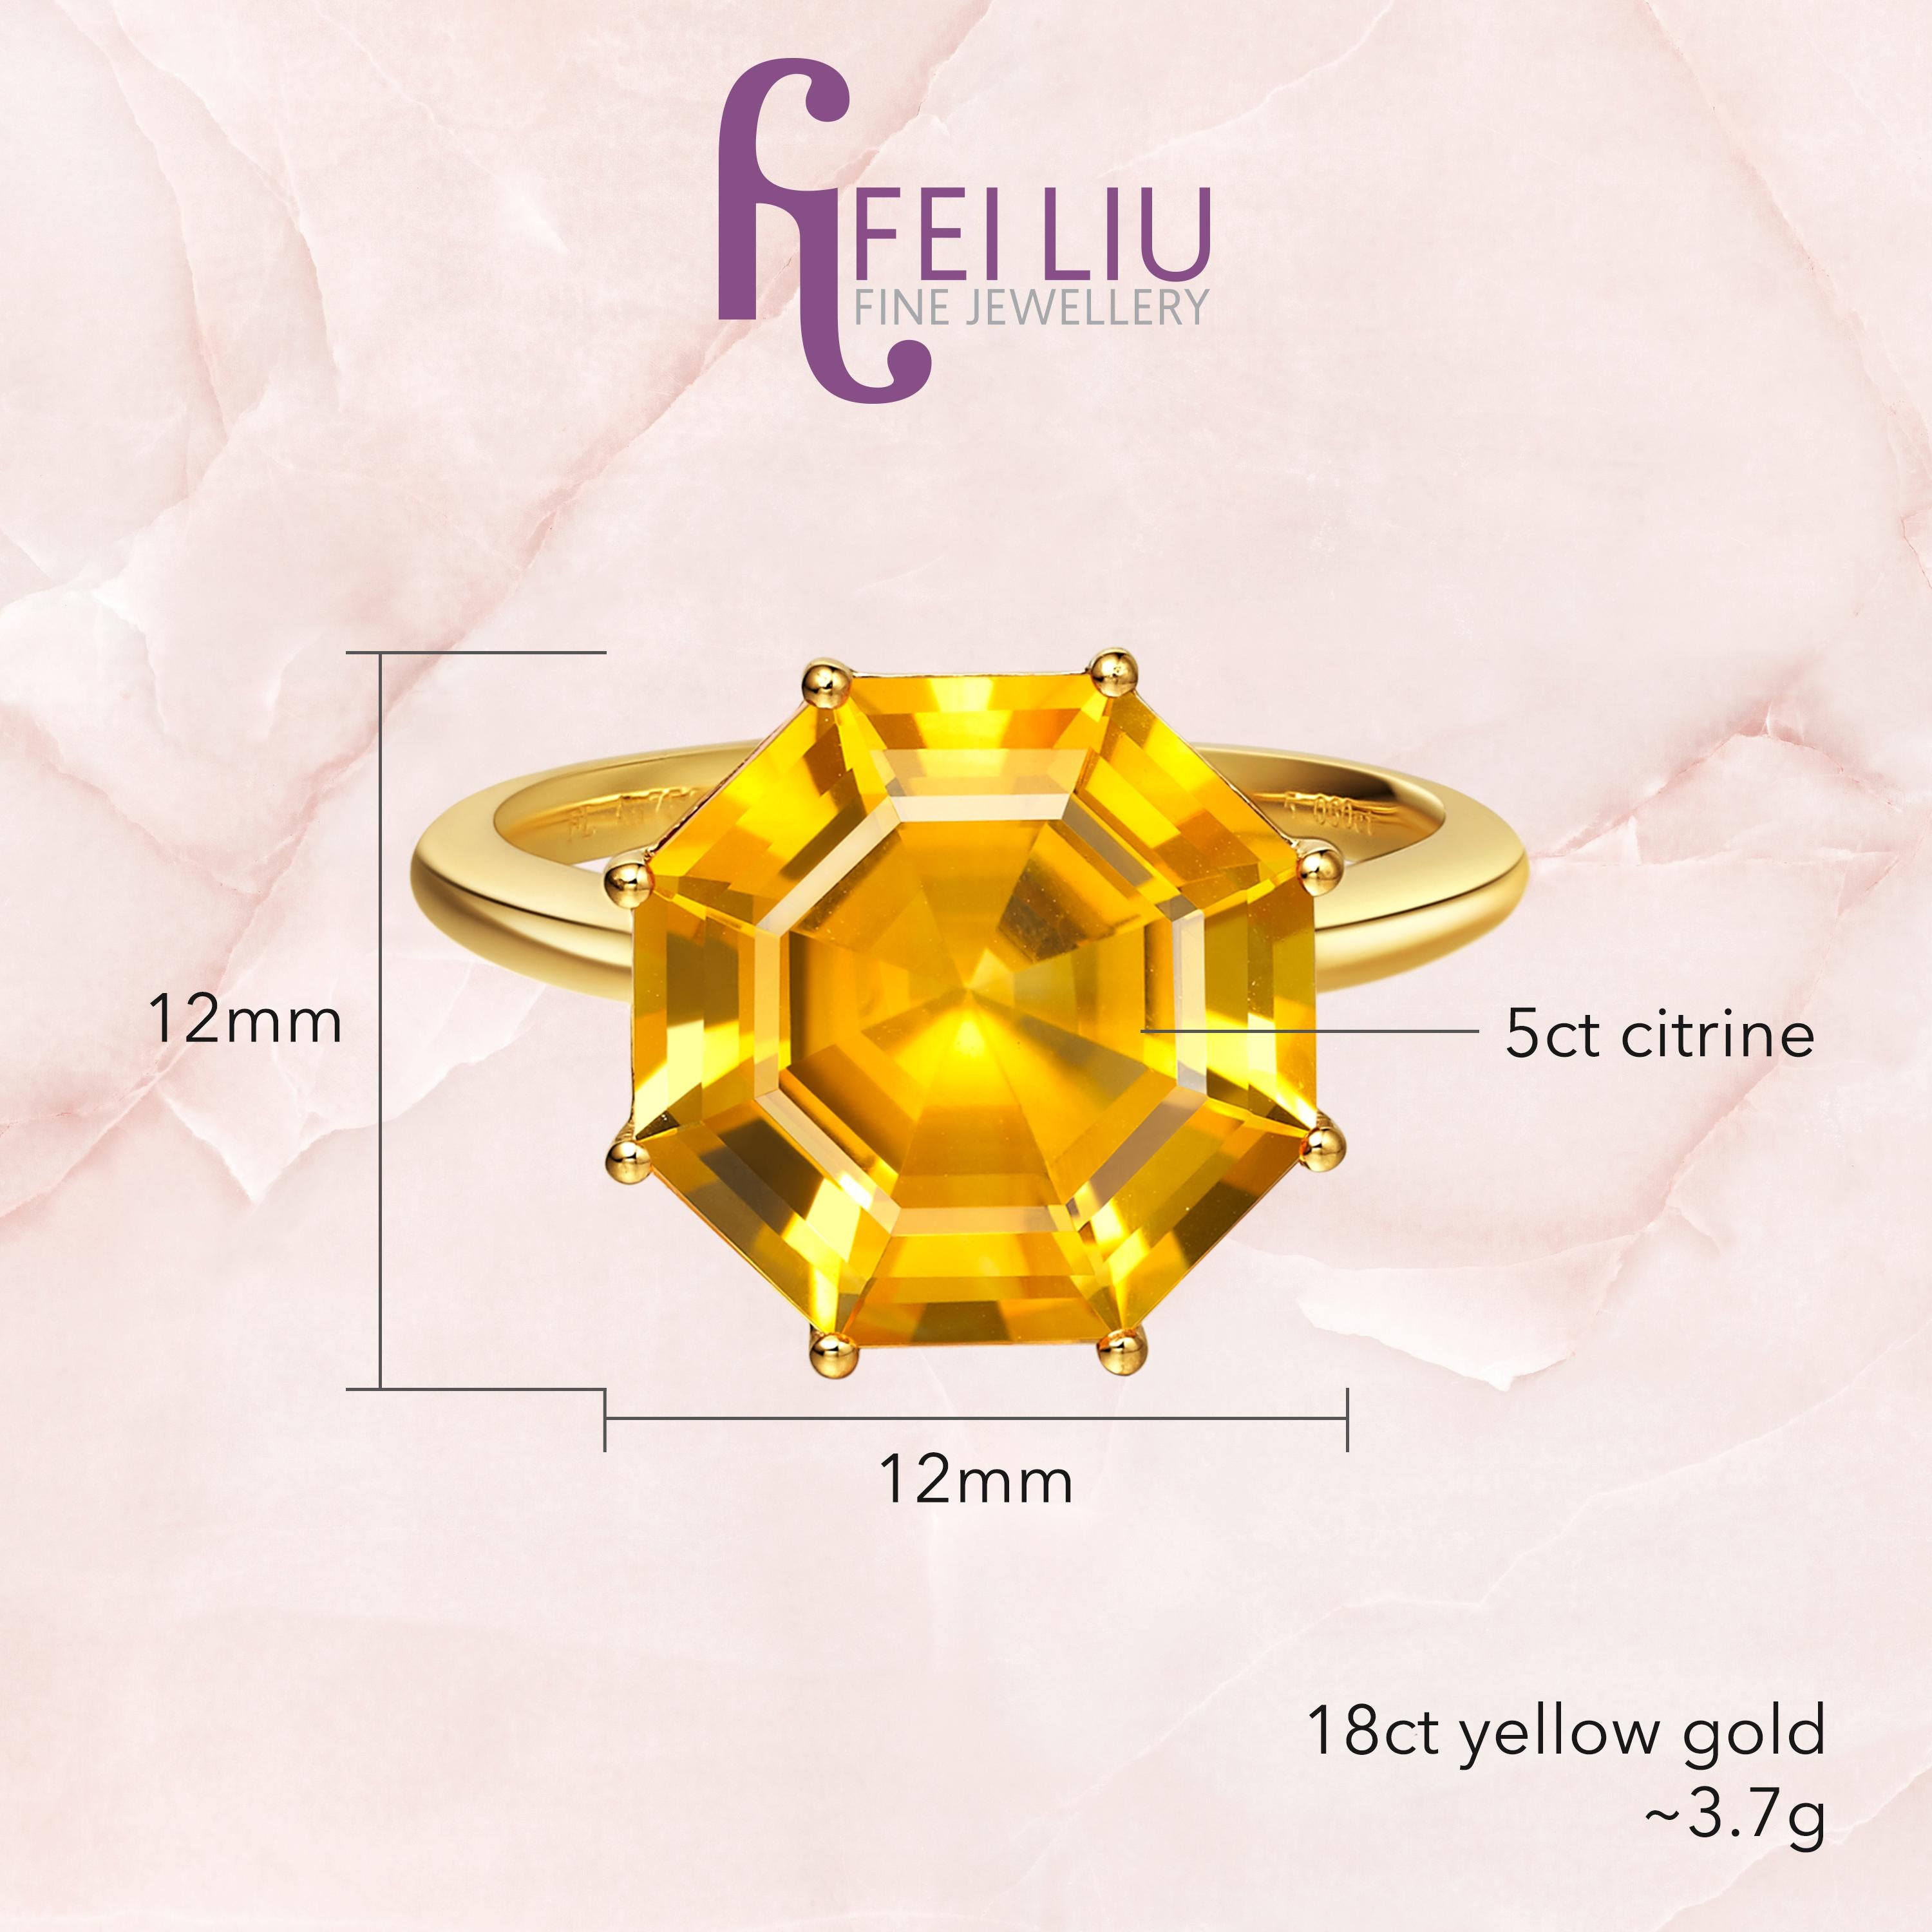 Asscher Cut Fei Liu Citrine Yellow Gold Ring